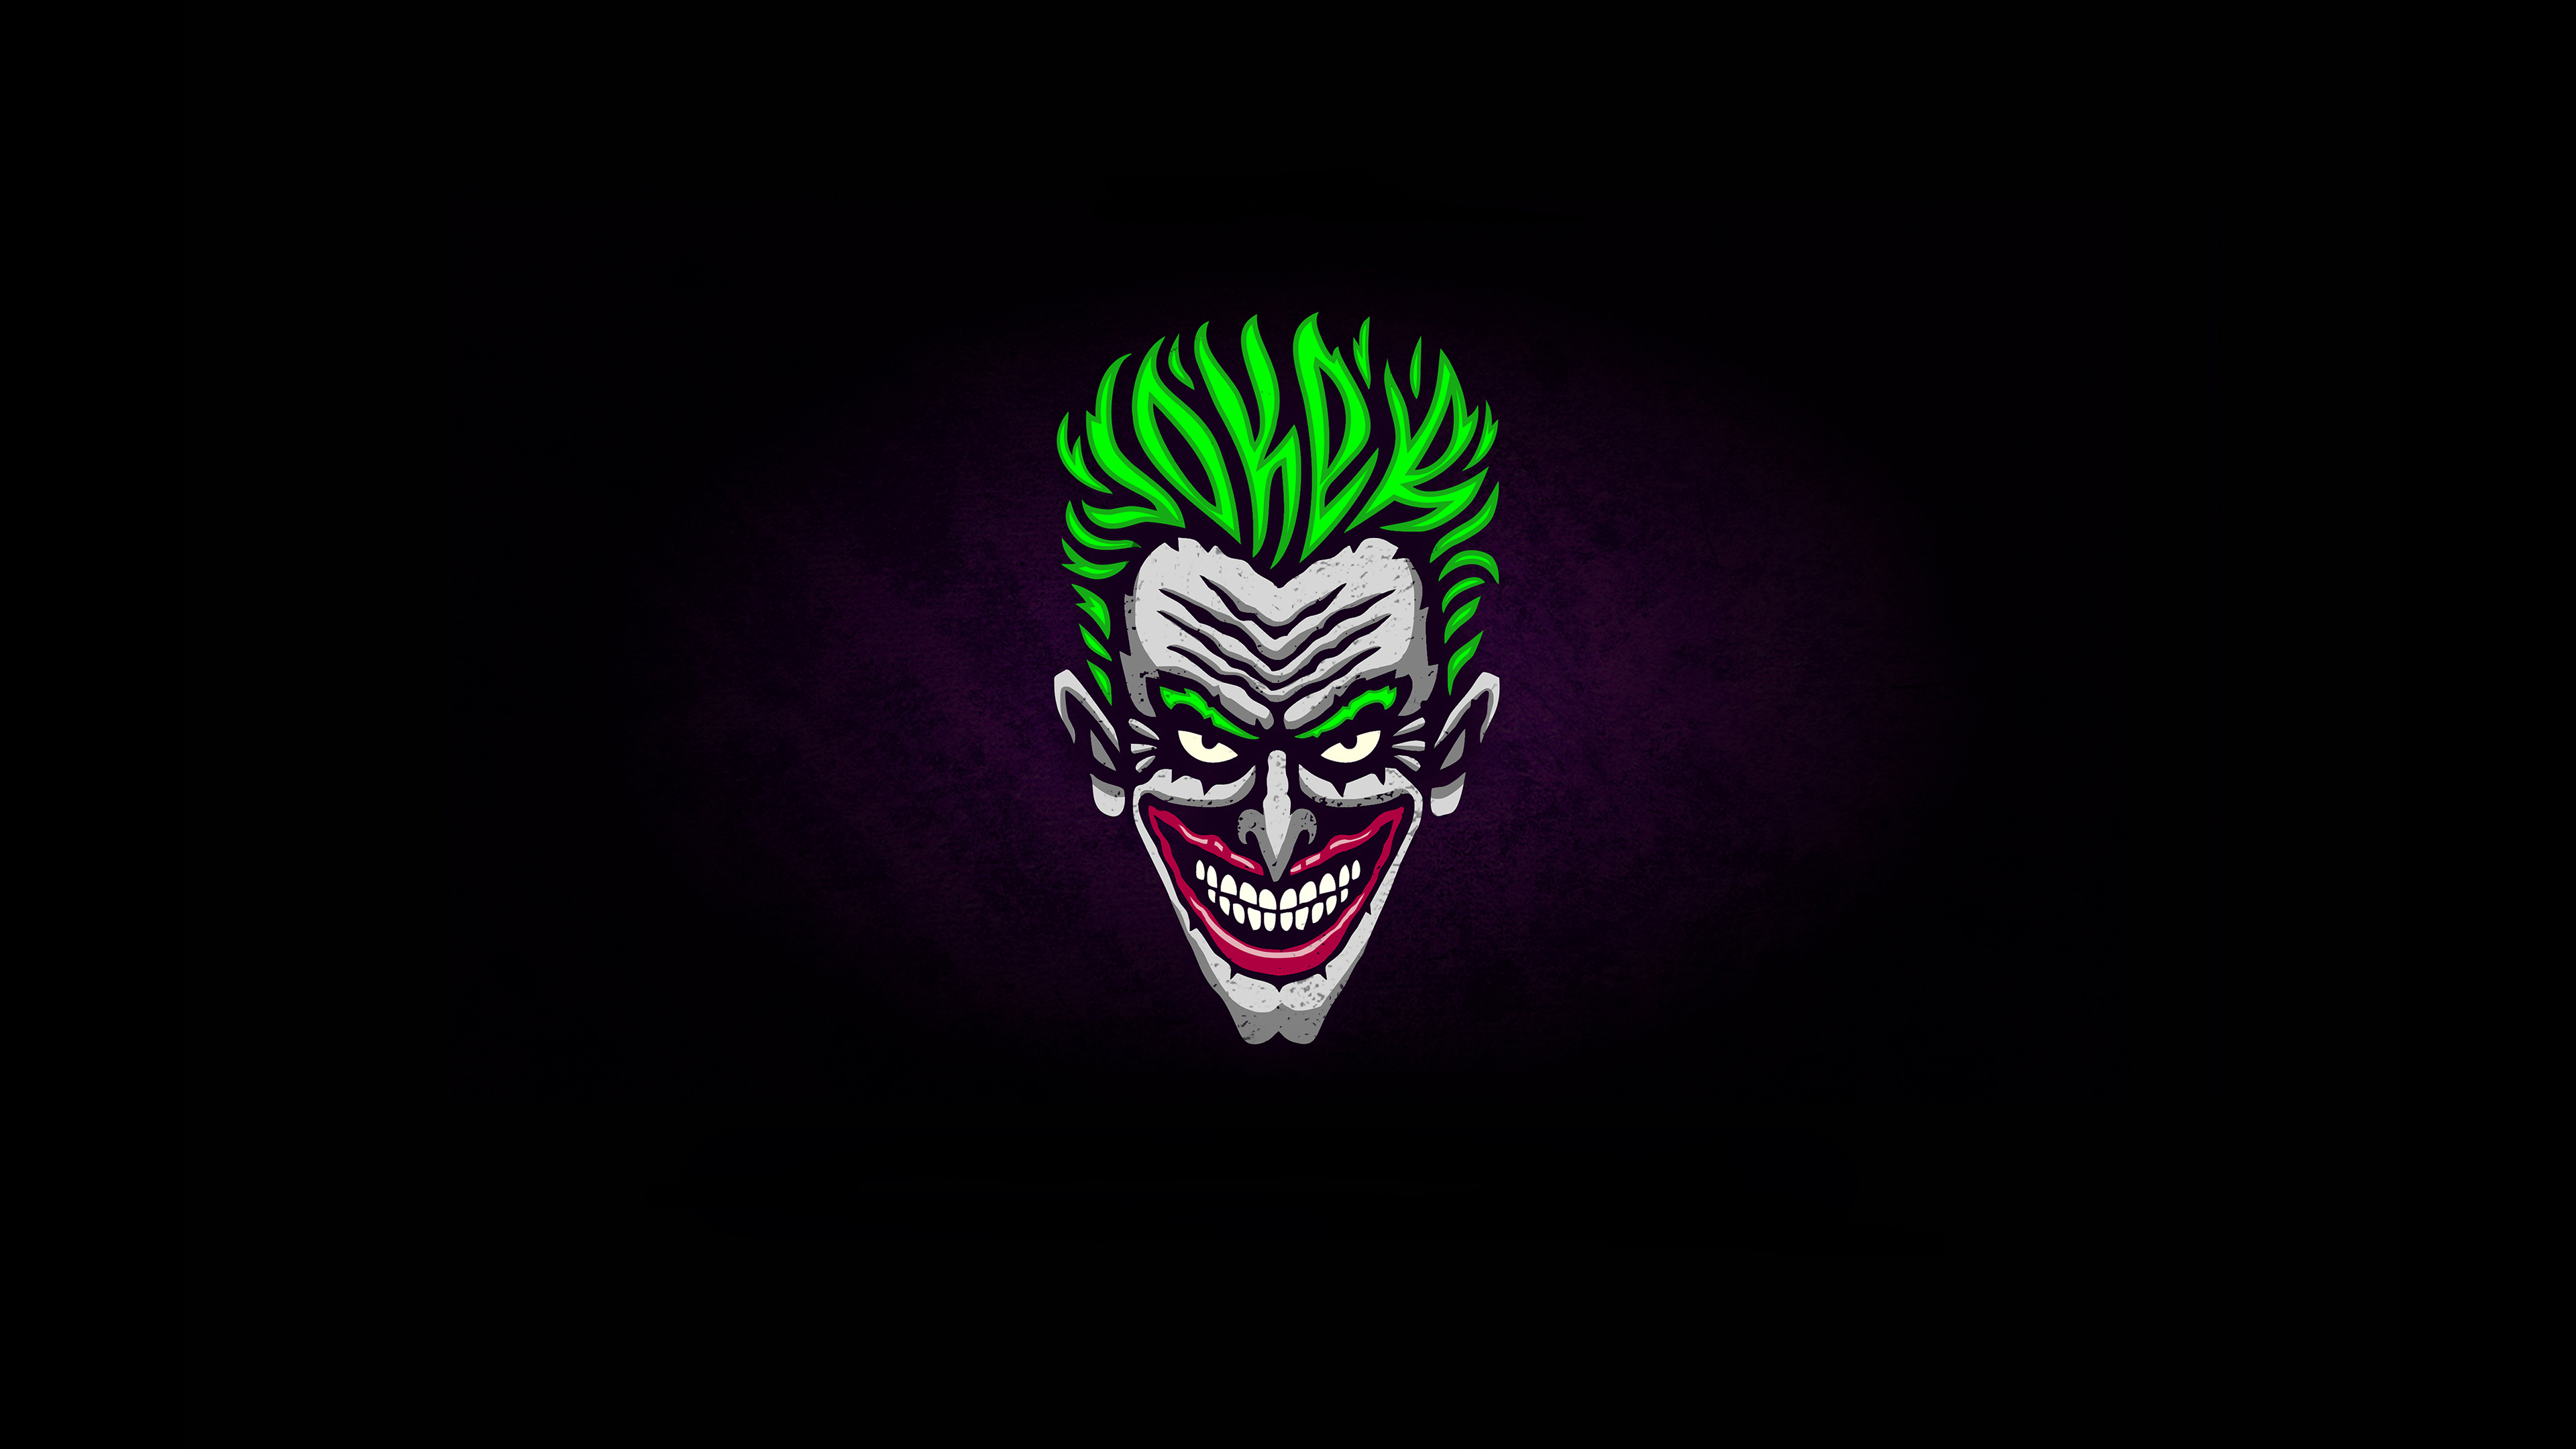 3840x2400 Joker Minimalist Logo 4k 4k Hd 4k Wallpapers Images